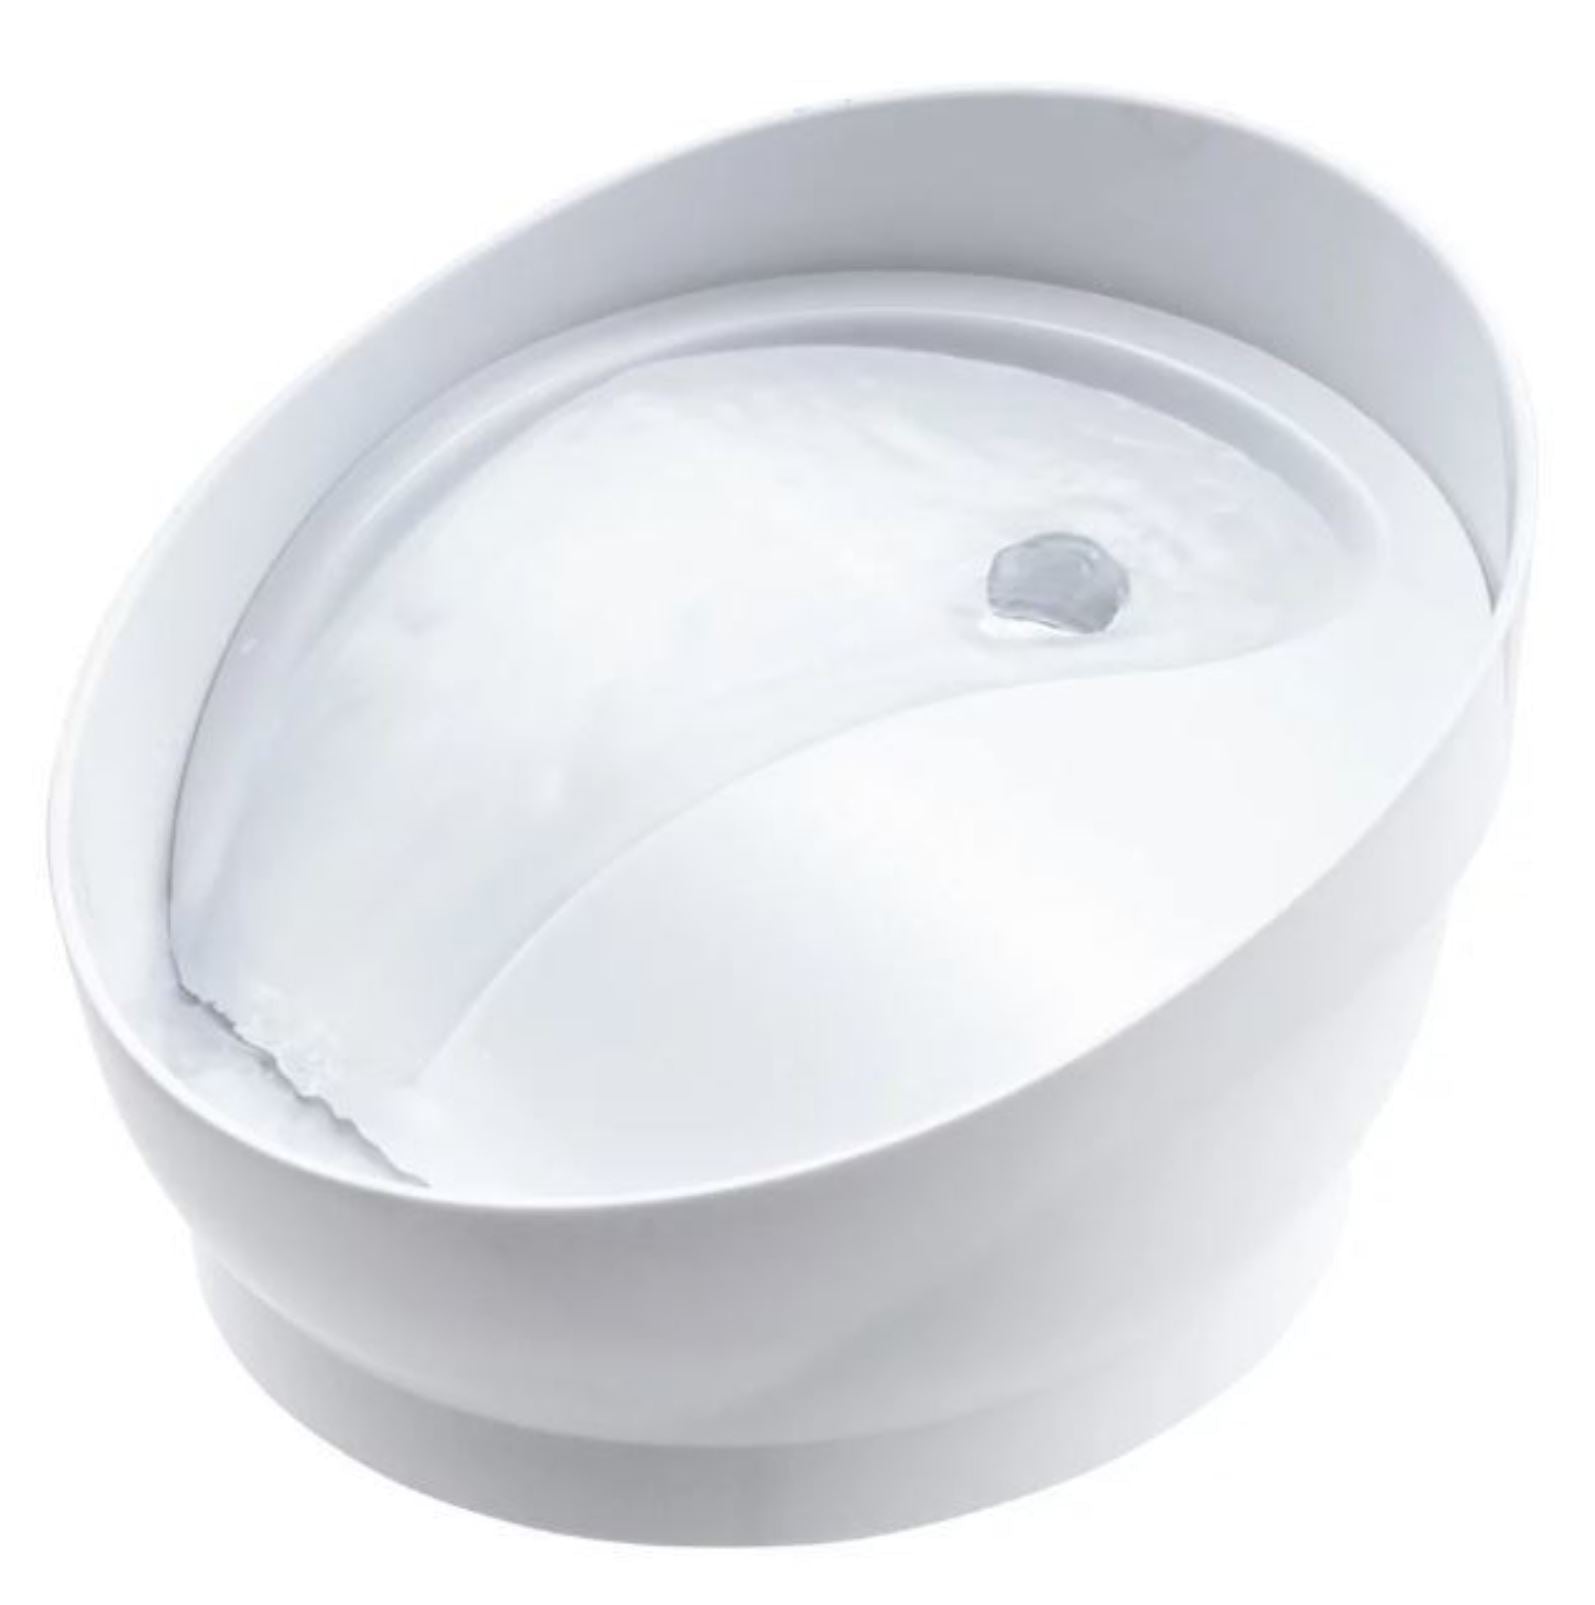 GEX 日本貓用循環式碗型飲水機 (白色950mL)